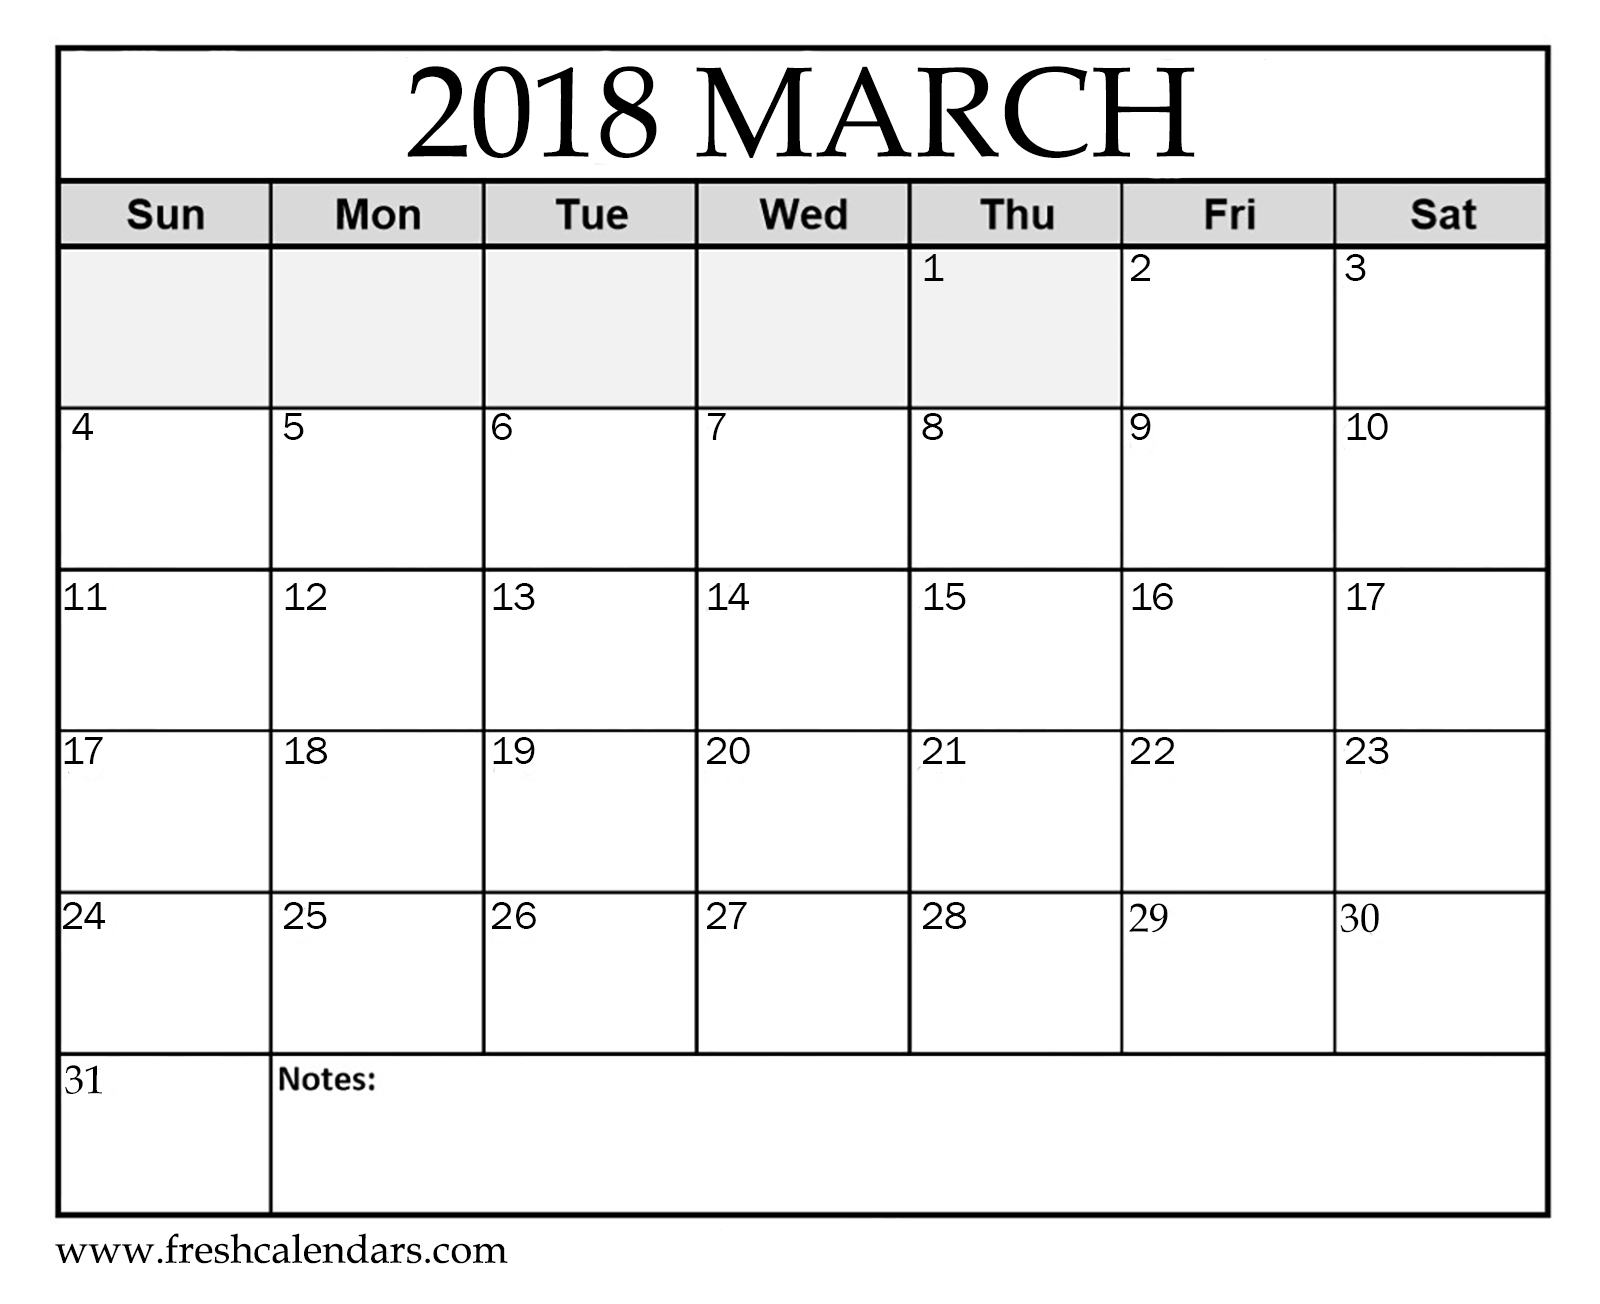 starfall calendar march 2018